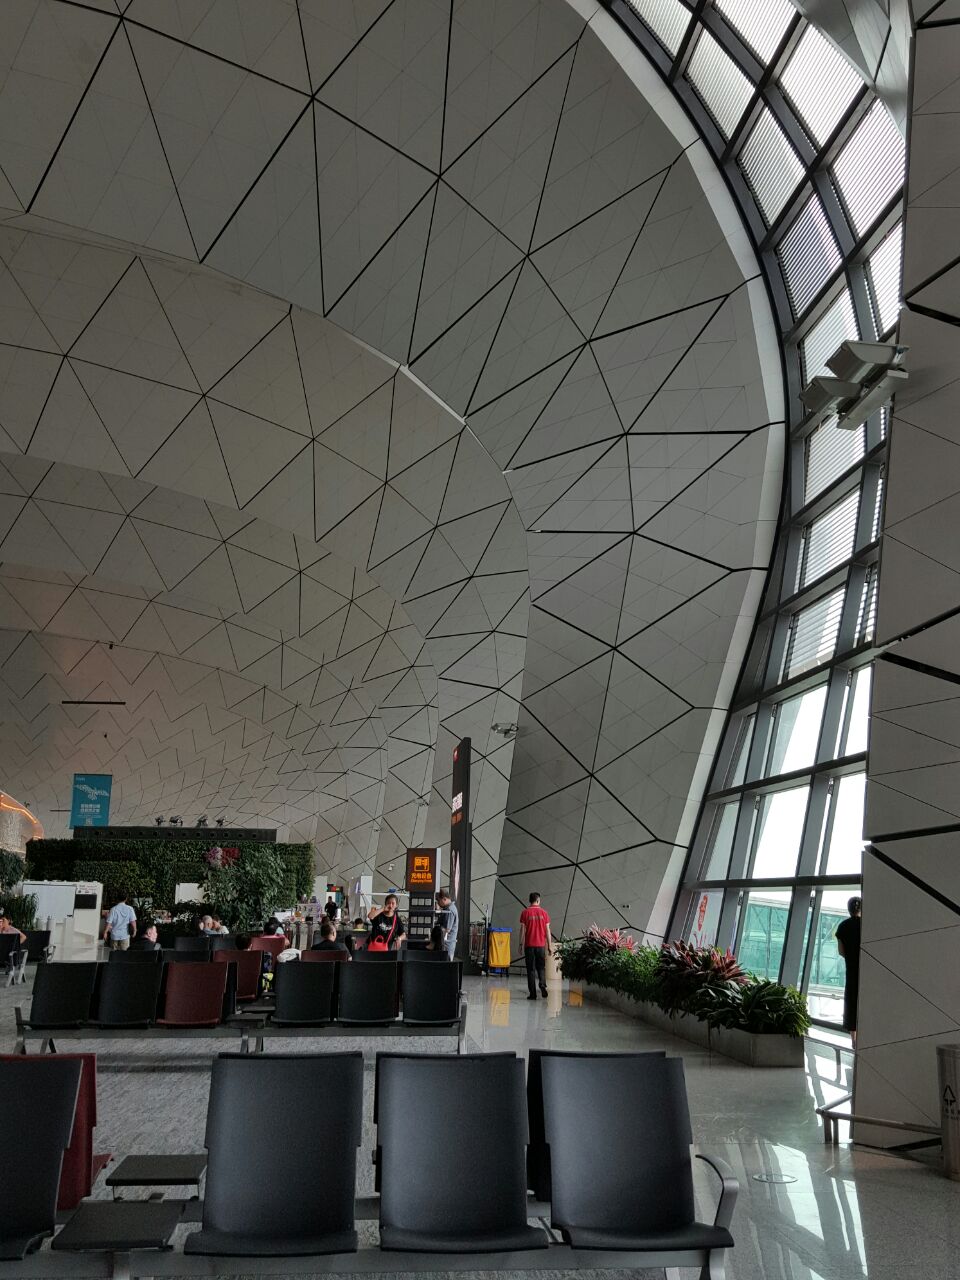 桃仙国际机场